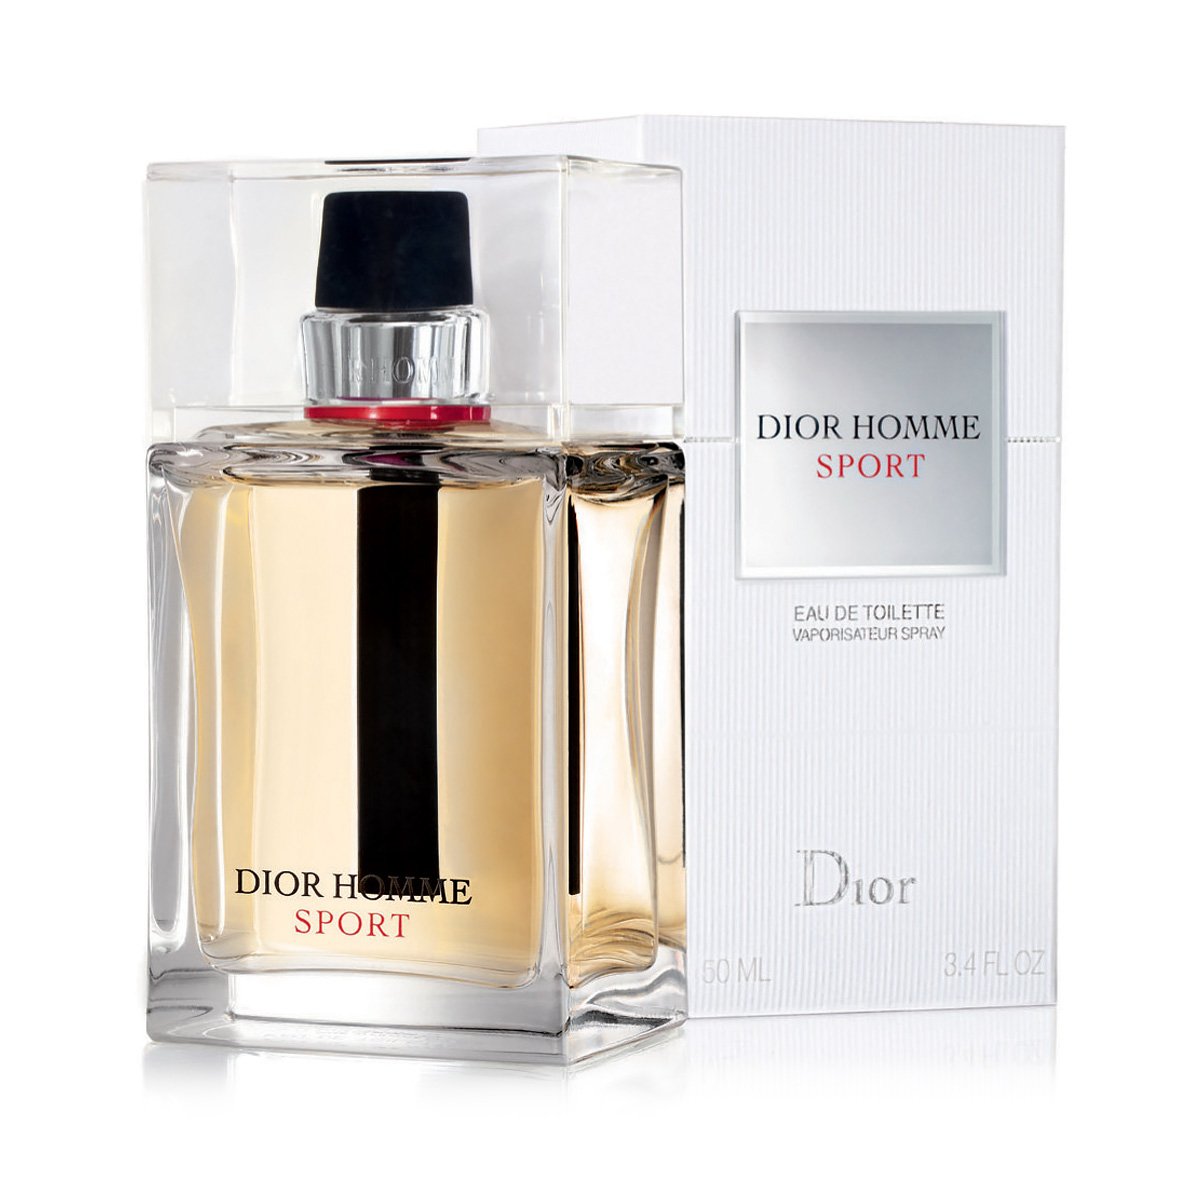 Туалетная вода christian. Christian Dior Dior homme Sport 2017. Dior homme Sport 100ml. Christian Dior Dior homme Sport 100ml. Туалетная вода Christian Dior "Dior homme Sport", 100 ml.